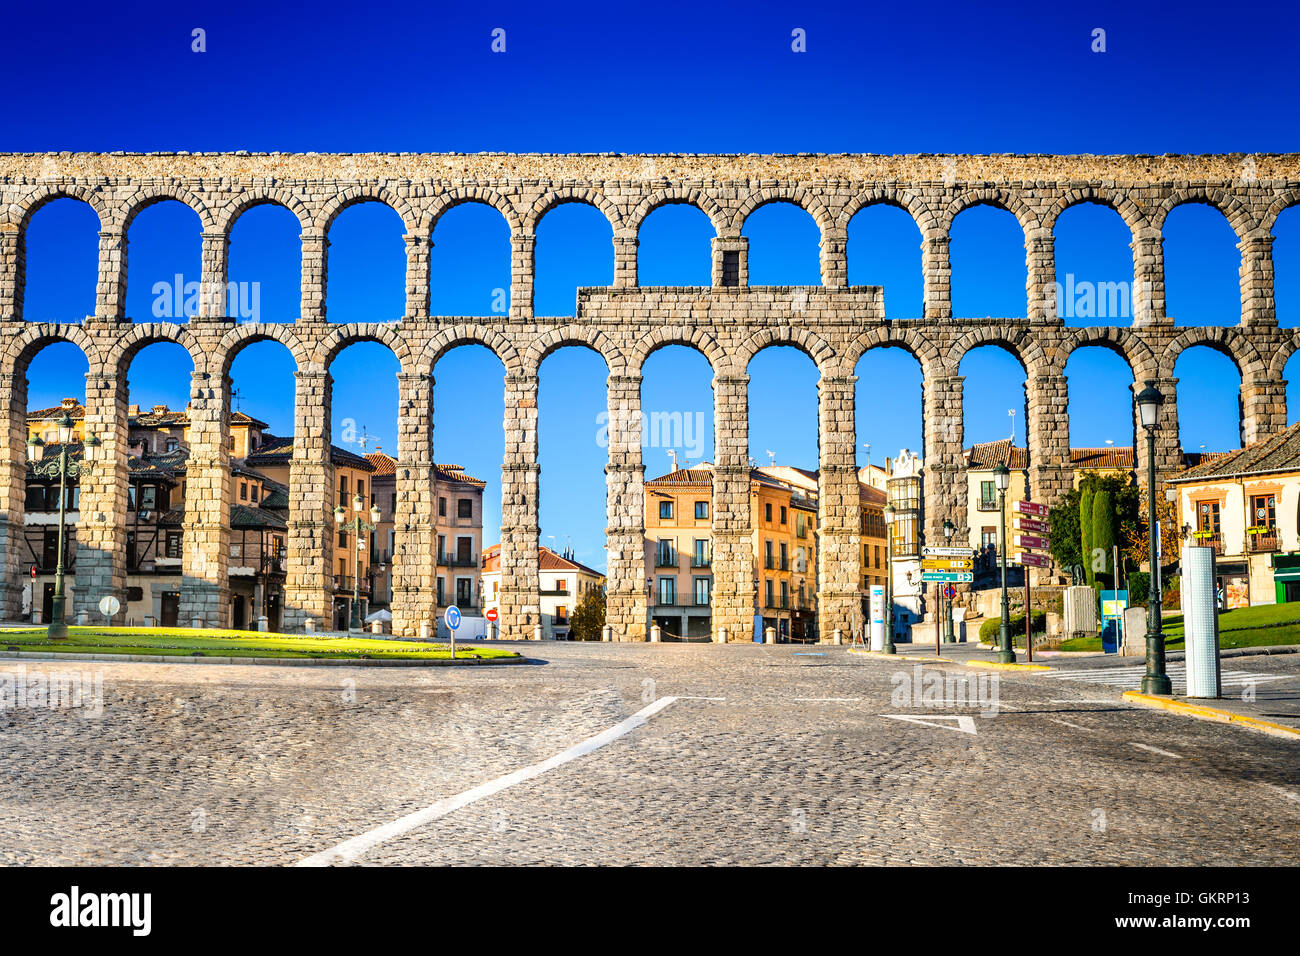 Segovia, España. Vista de la ciudad en la Plaza del Artilleria y el antiguo acueducto romano, Castilla y León. Foto de stock